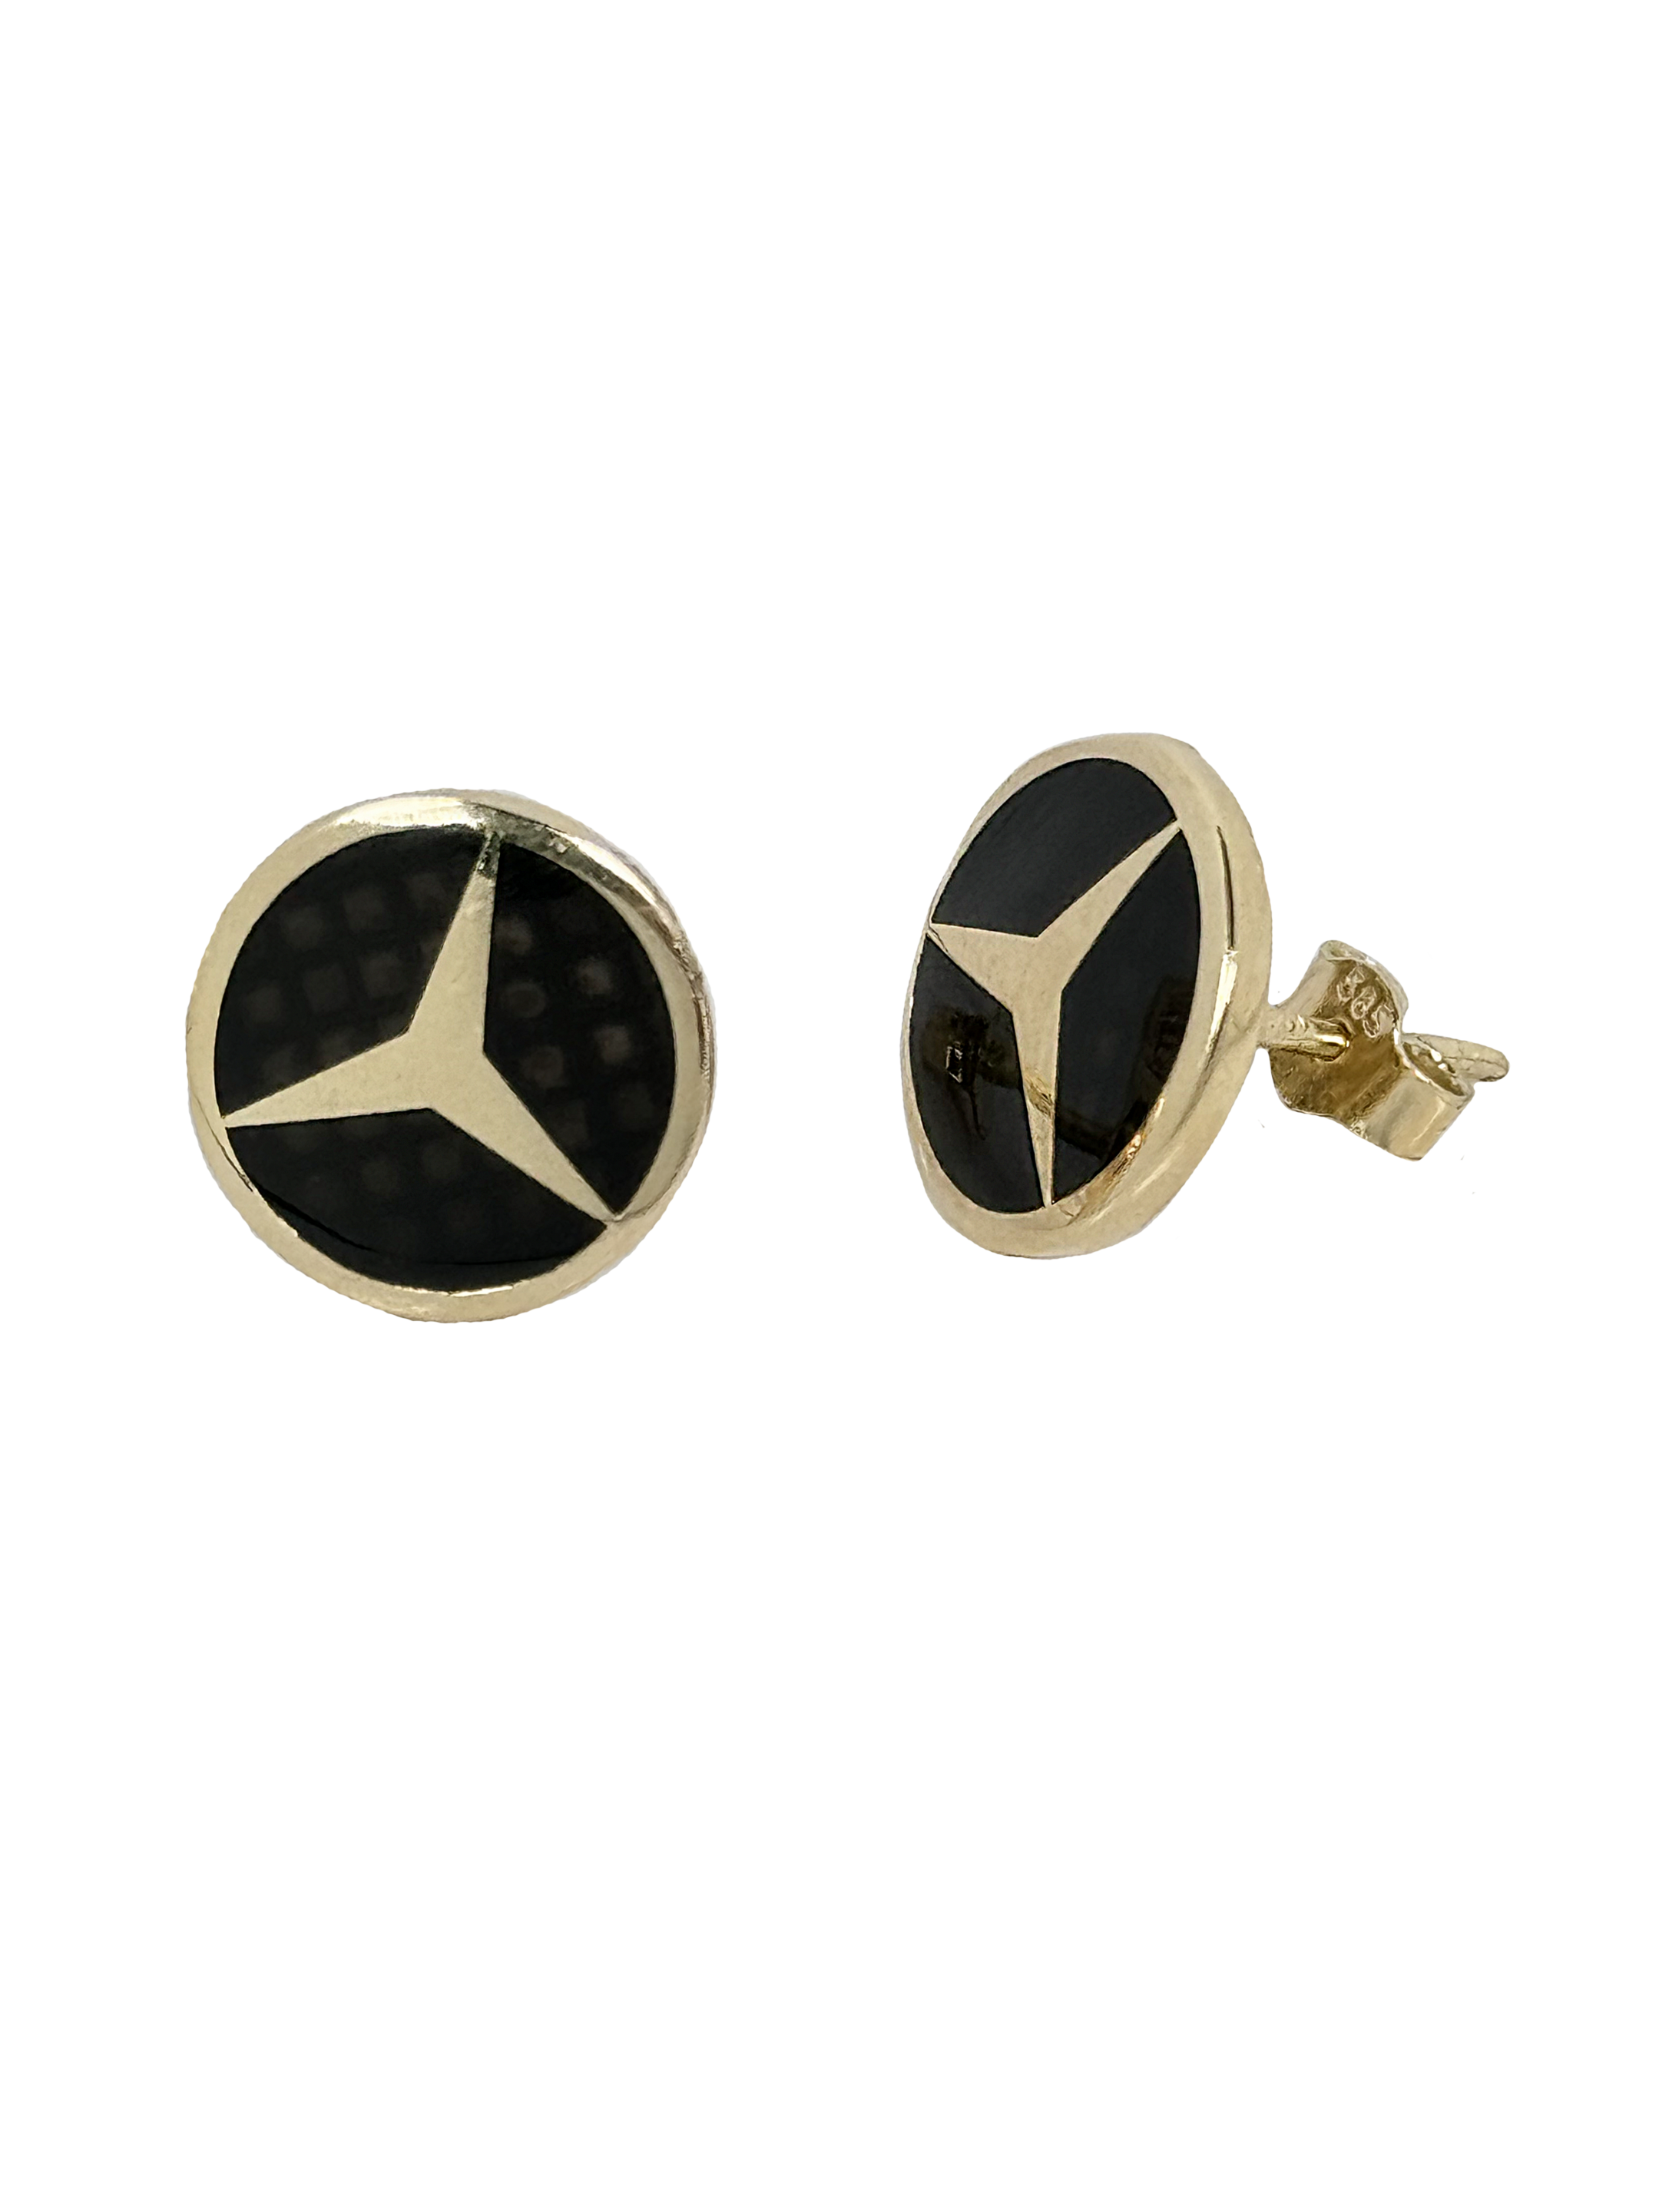 Χρυσά σκουλαρίκια με λογότυπο αυτοκινήτου με μαύρο όνυχα